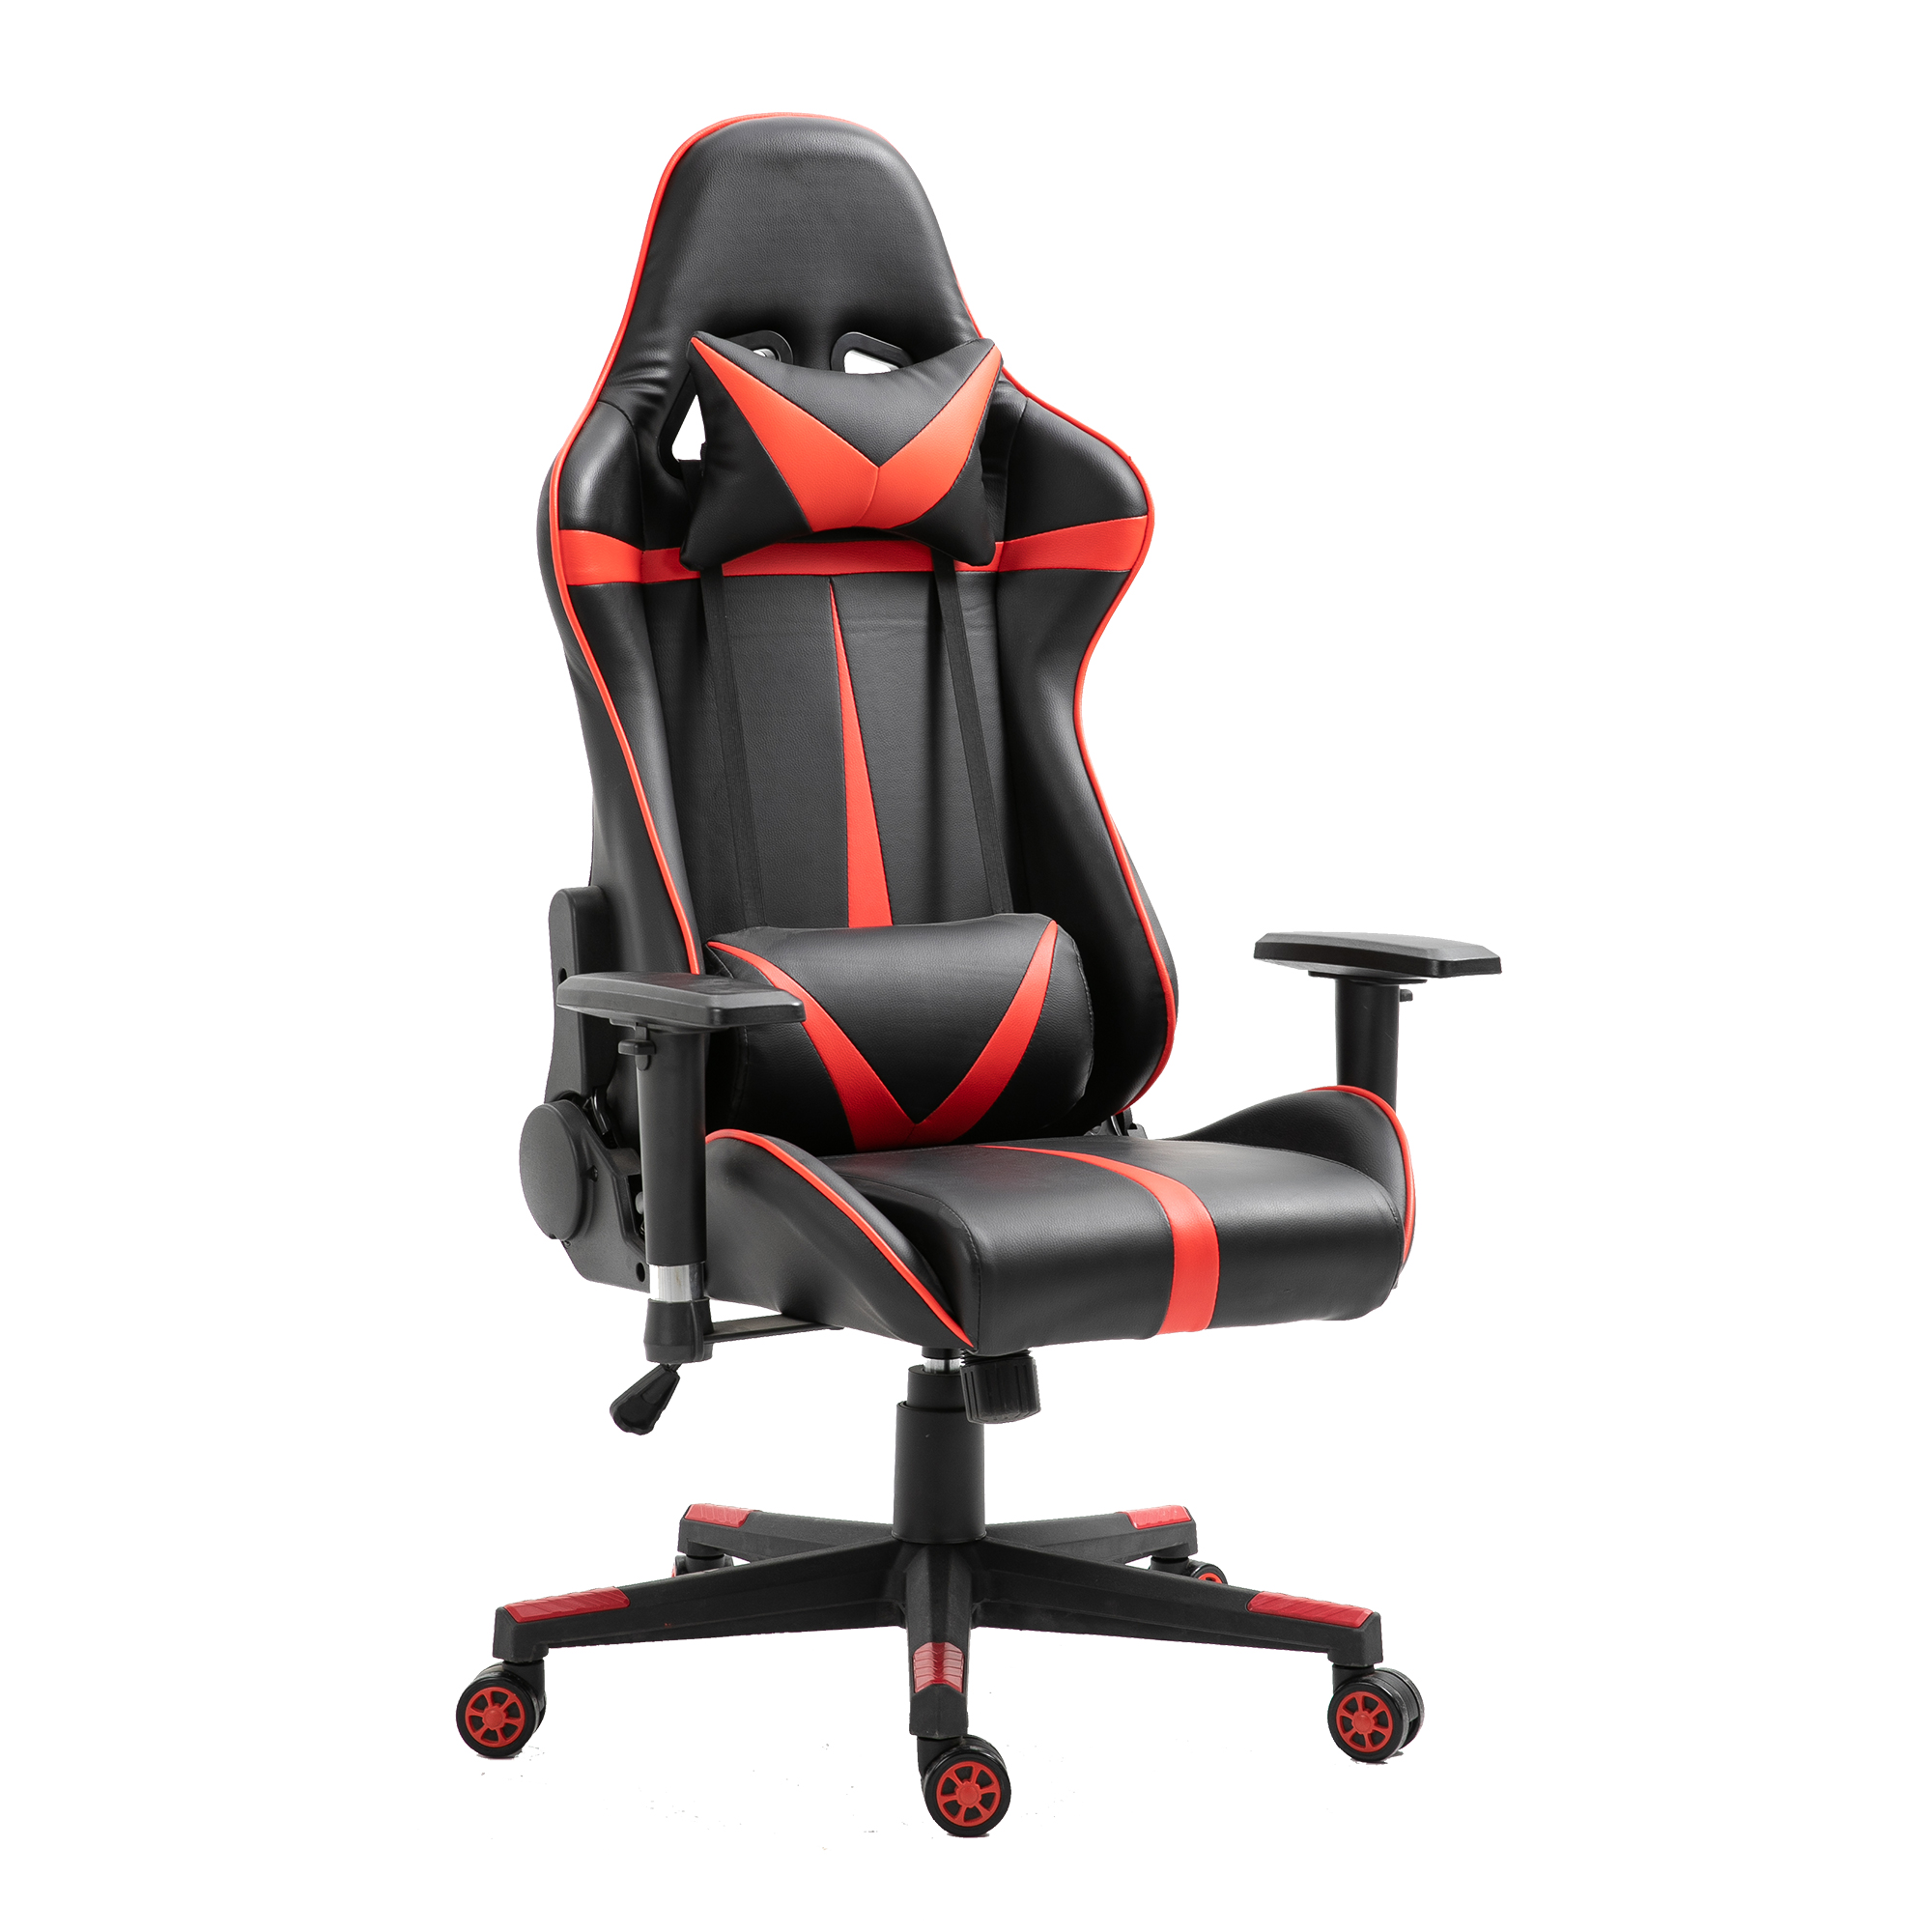 Високоякісне ергономічне розкішне крісло Silla Gamer, що обертається, дешеве шкіряне PU, гоночний домашній комп’ютер, офісне крісло, ігрове крісло. Рекомендоване зображення